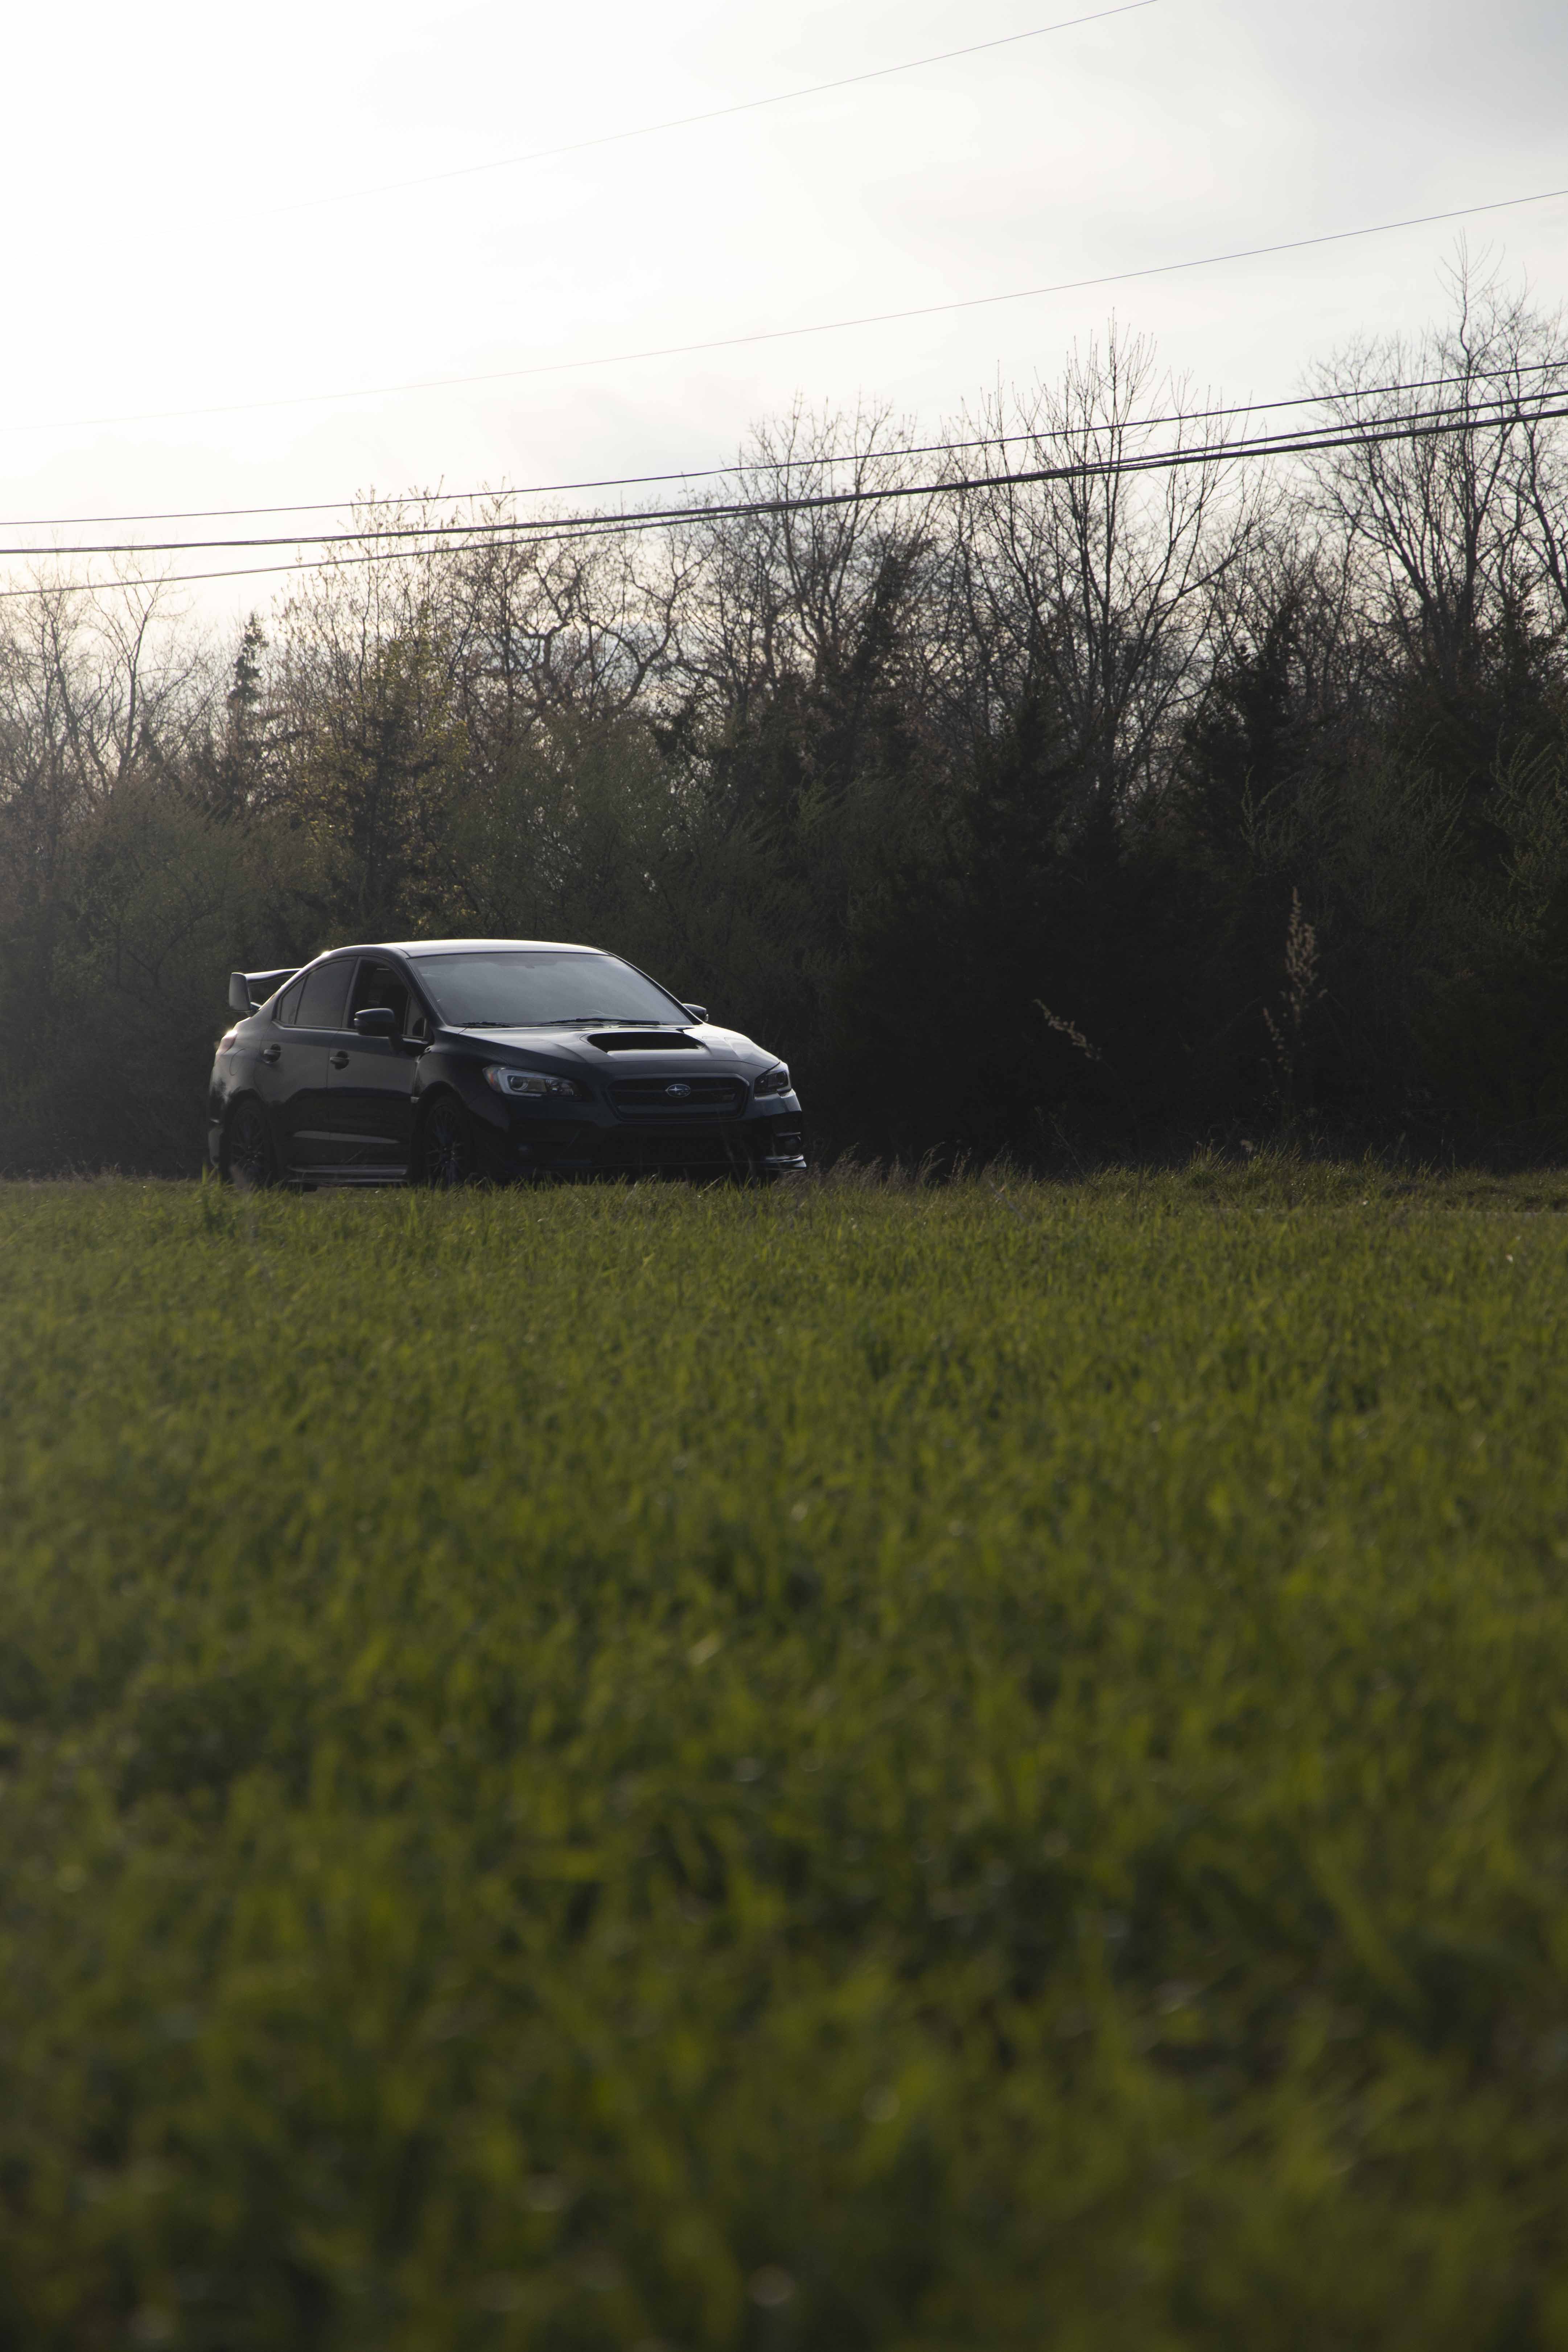 Subaru WRX STI Photo Before Editing